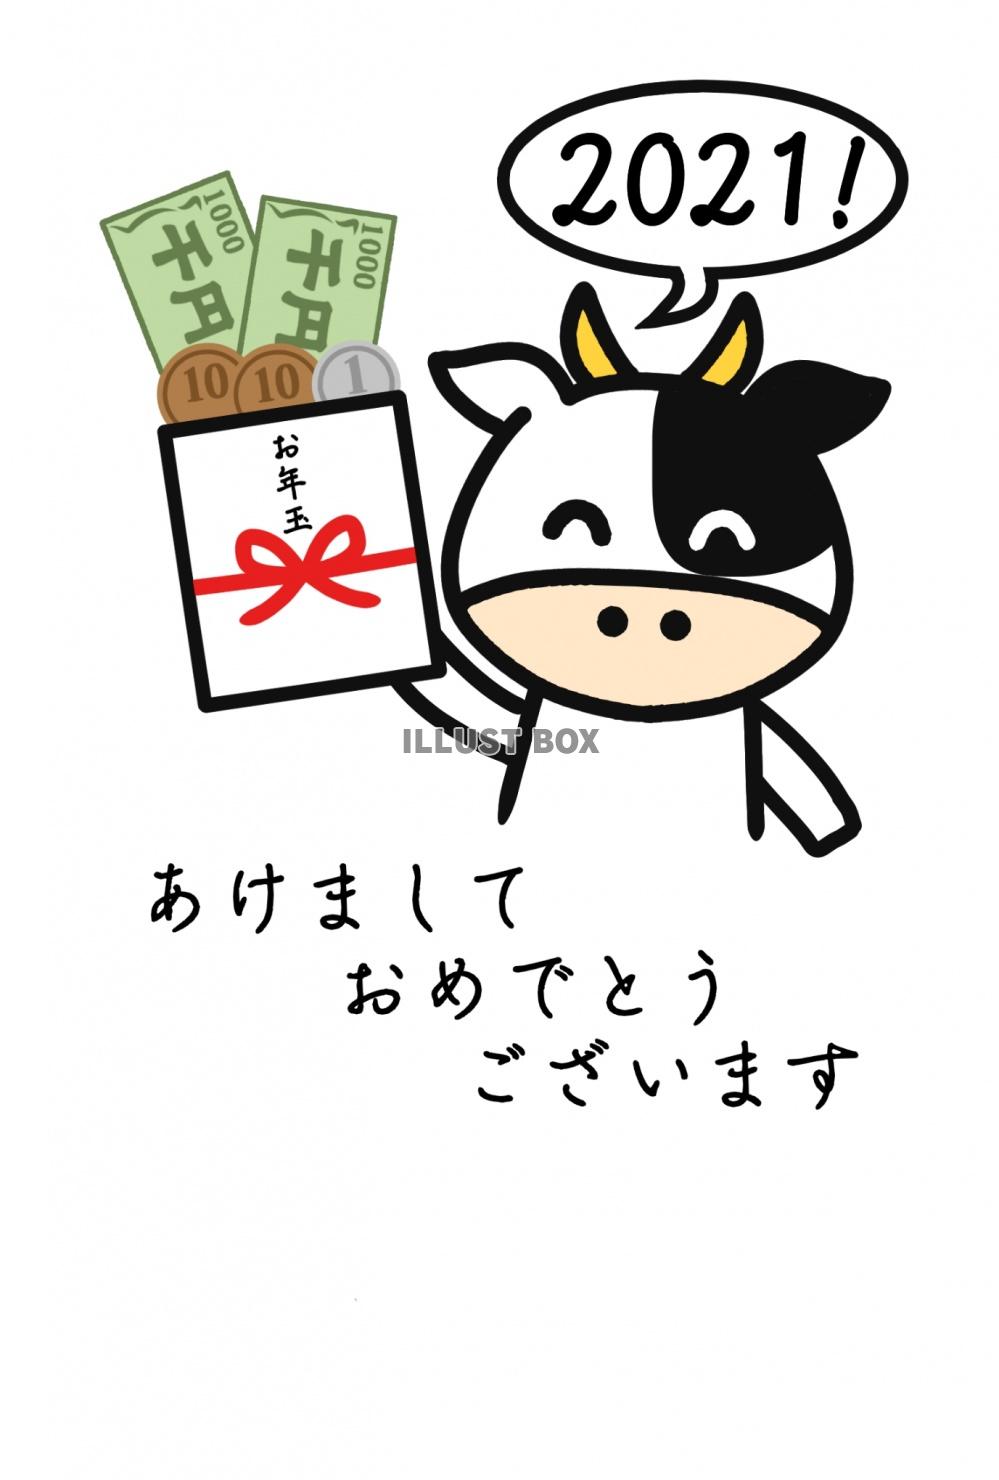 二千二十一円のお年玉を持った牛2021の丑年年賀状